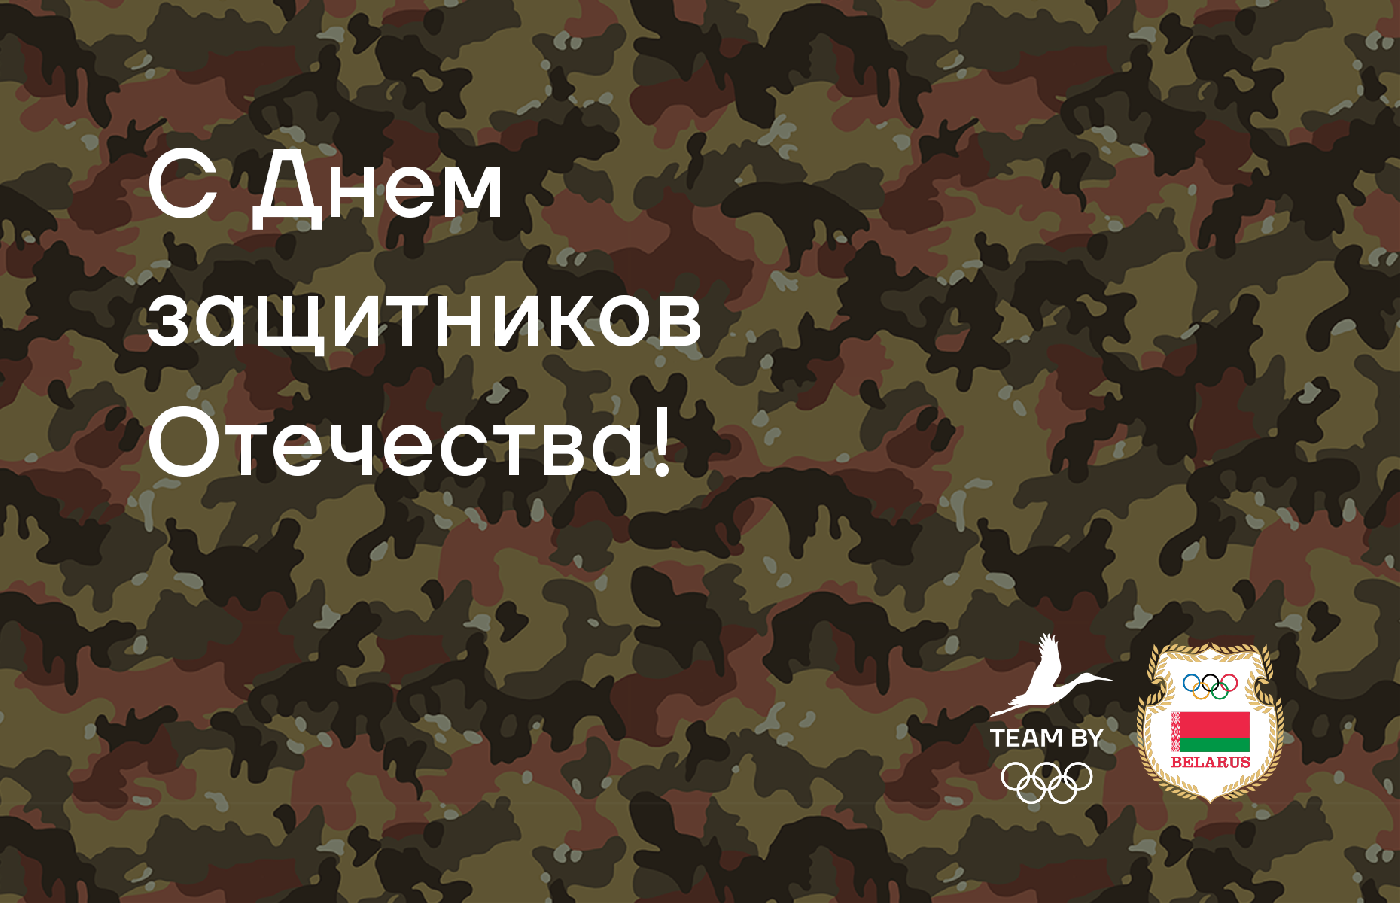 НОК Беларуси поздравляет с Днем защитников Отечества!